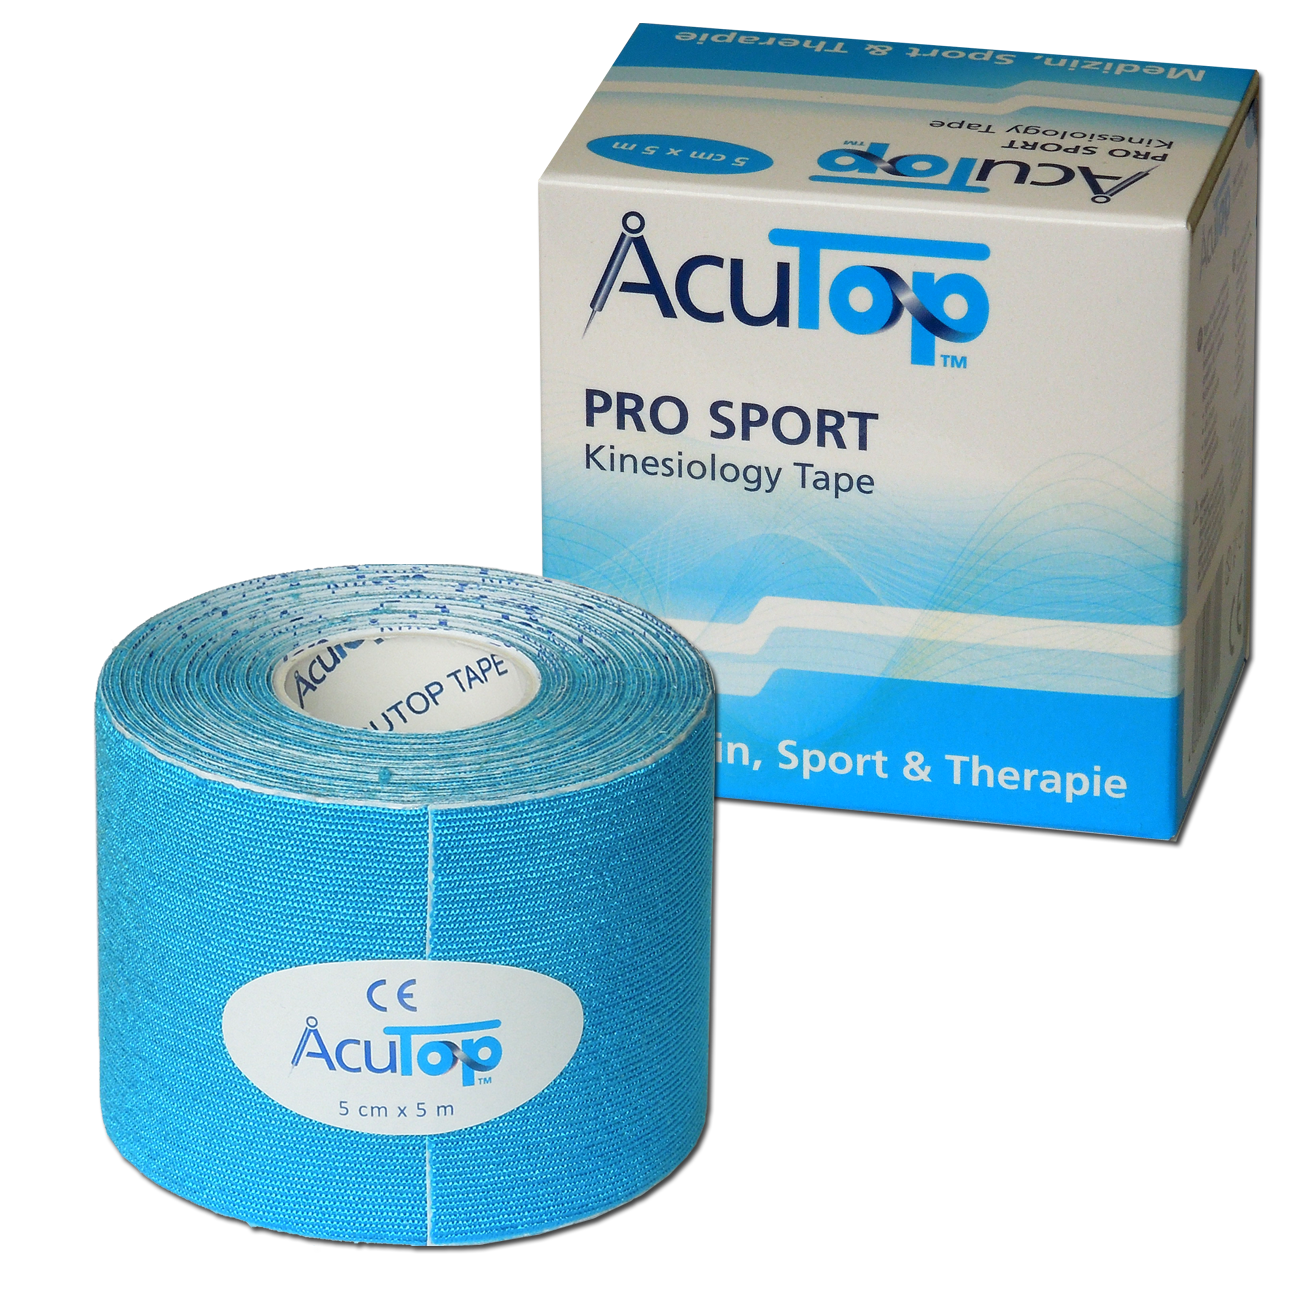 AcuTop Pro Sport - De beste sporttape - Blauw - 5cm x 5m - Intertaping.nl